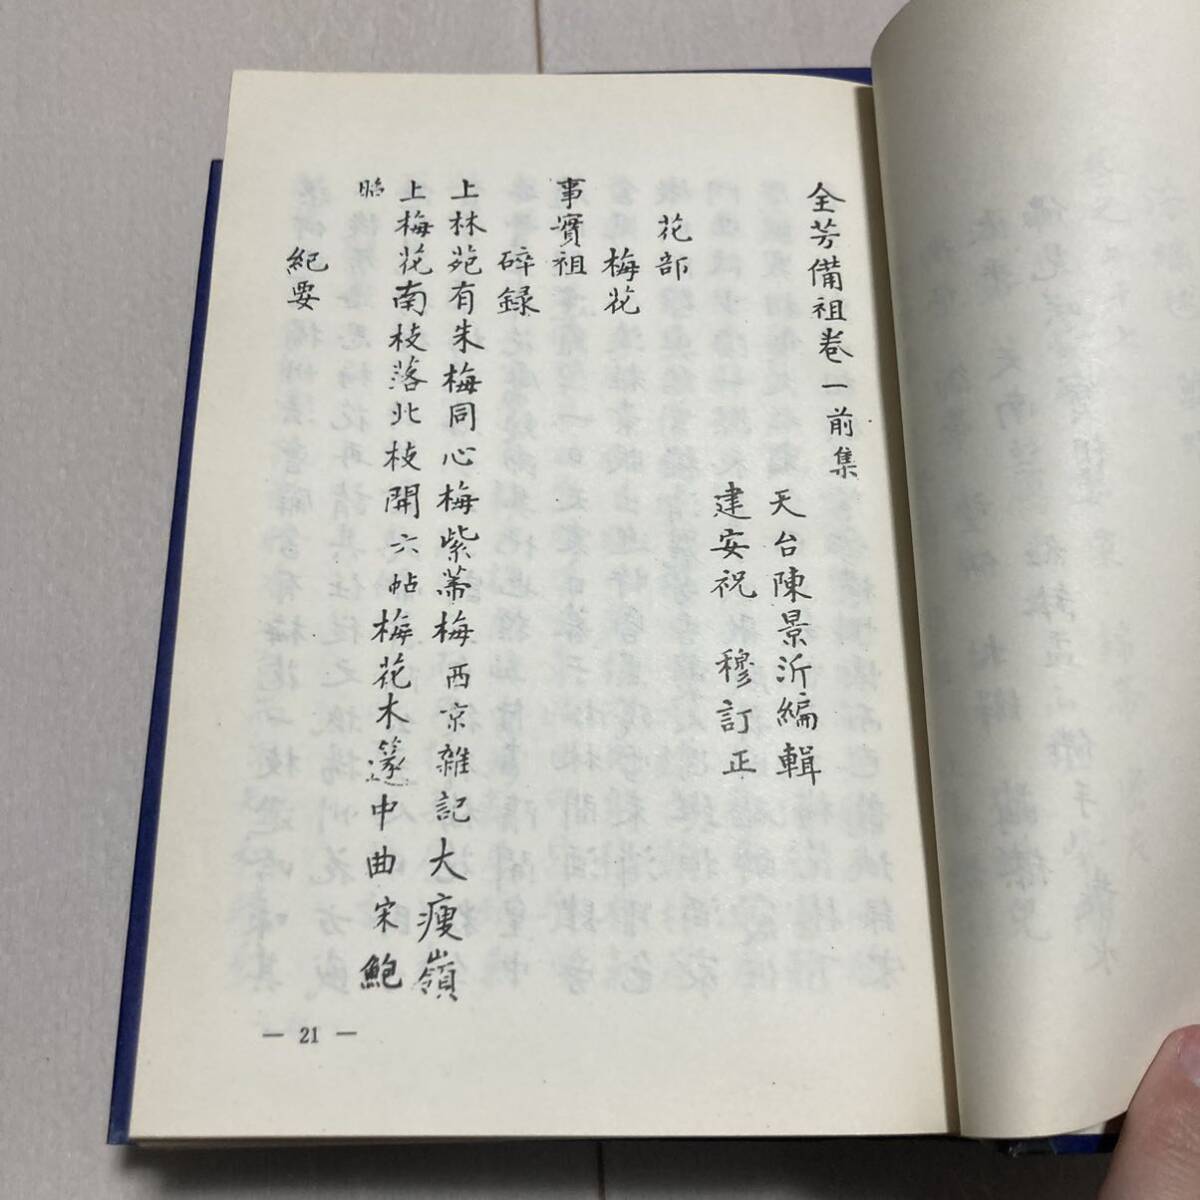 J 1982 год выпуск Tang книга@. печать версия . оборудование книга@ China документ [ China ...книга@0. все .0.] все 2 шт. .